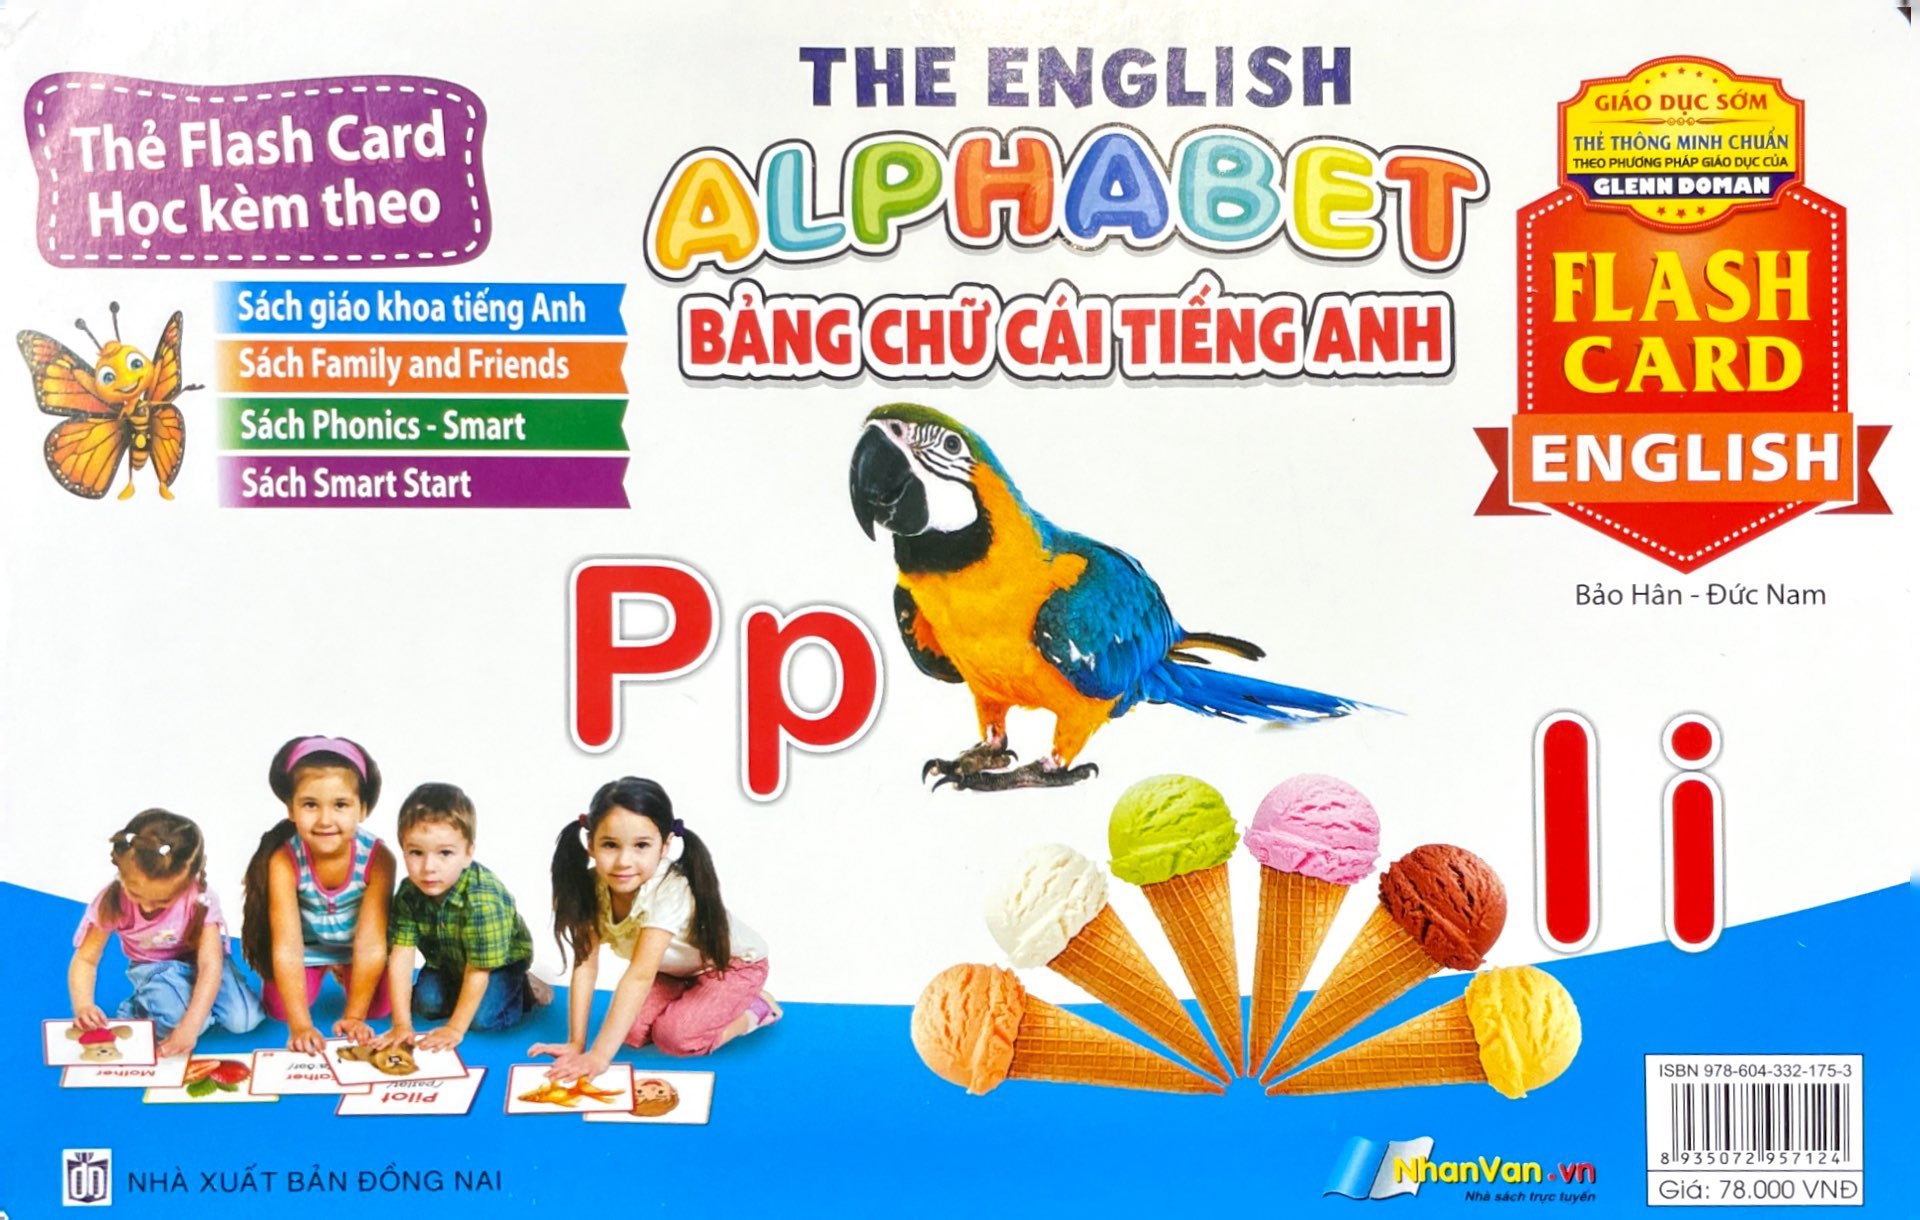 Flash Card Tiếng Anh -The English Alphabet Bảng Chữ Cái Tiếng Anh PDF